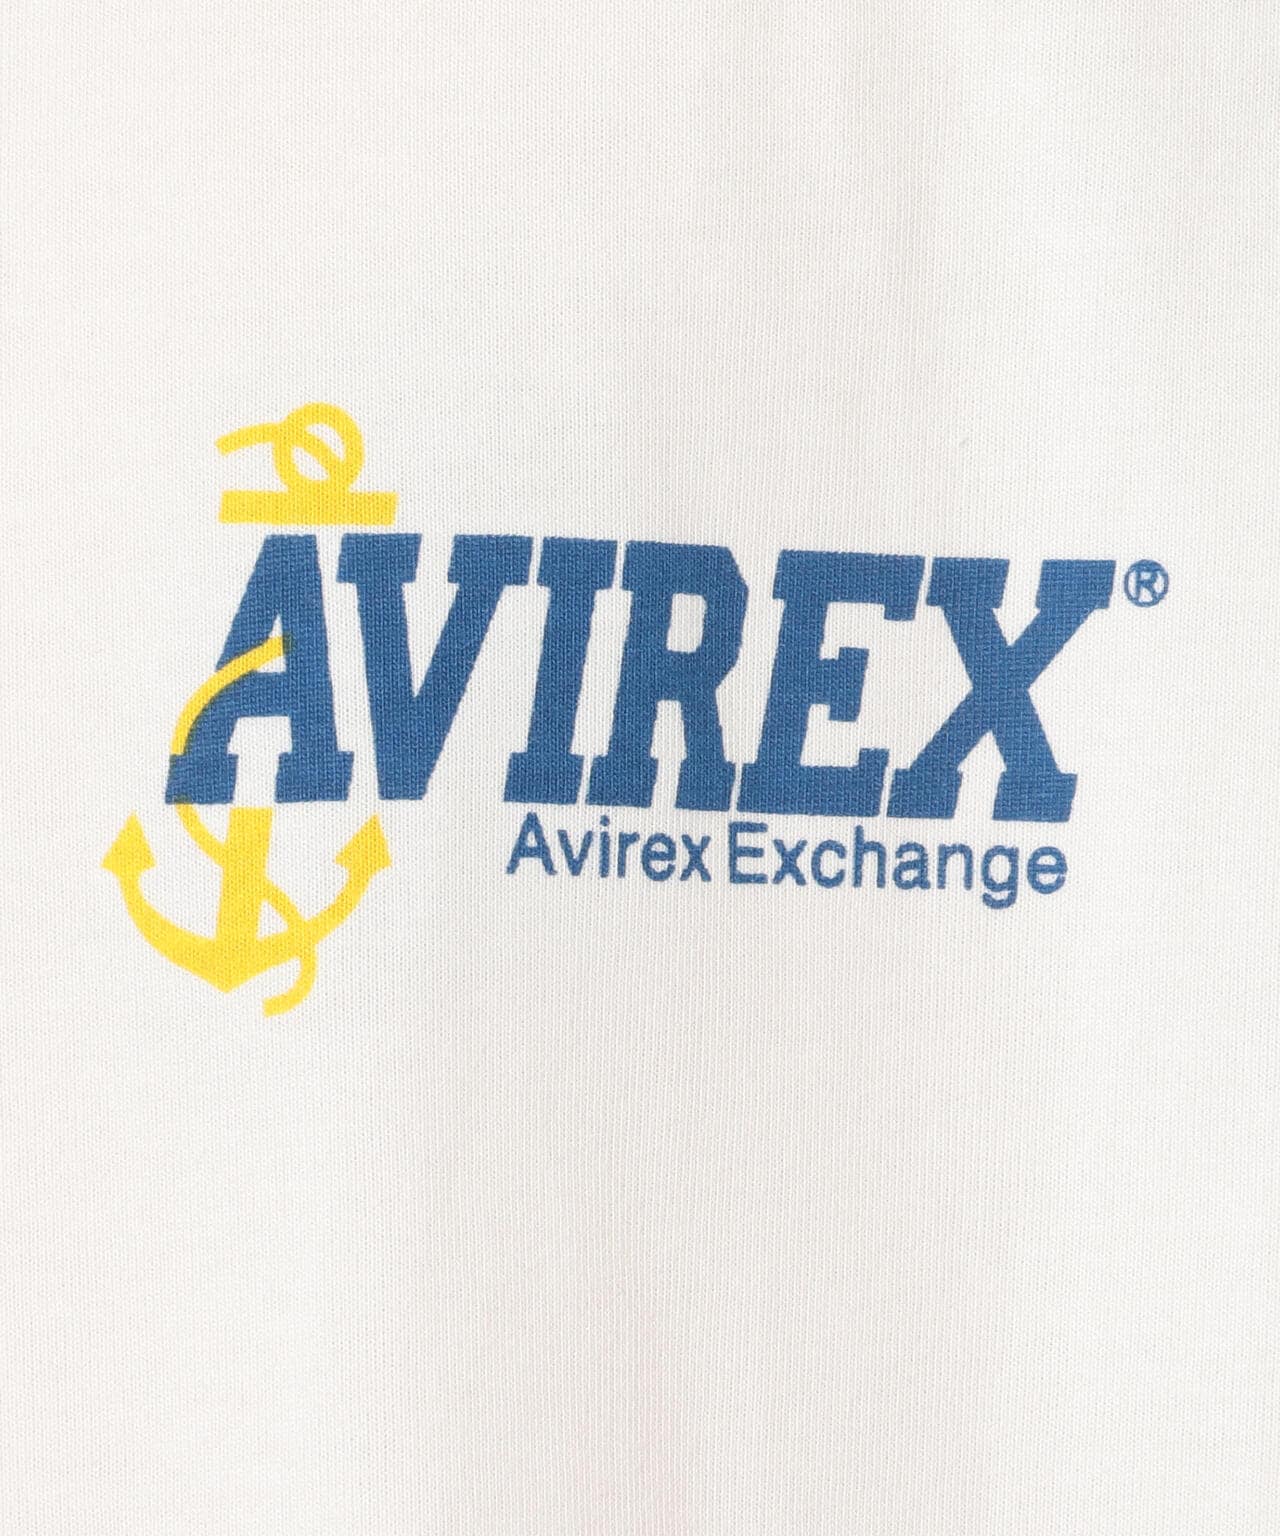 AEX ユニフォーム Tシャツ/AEX UNIFORM T-SHIRT